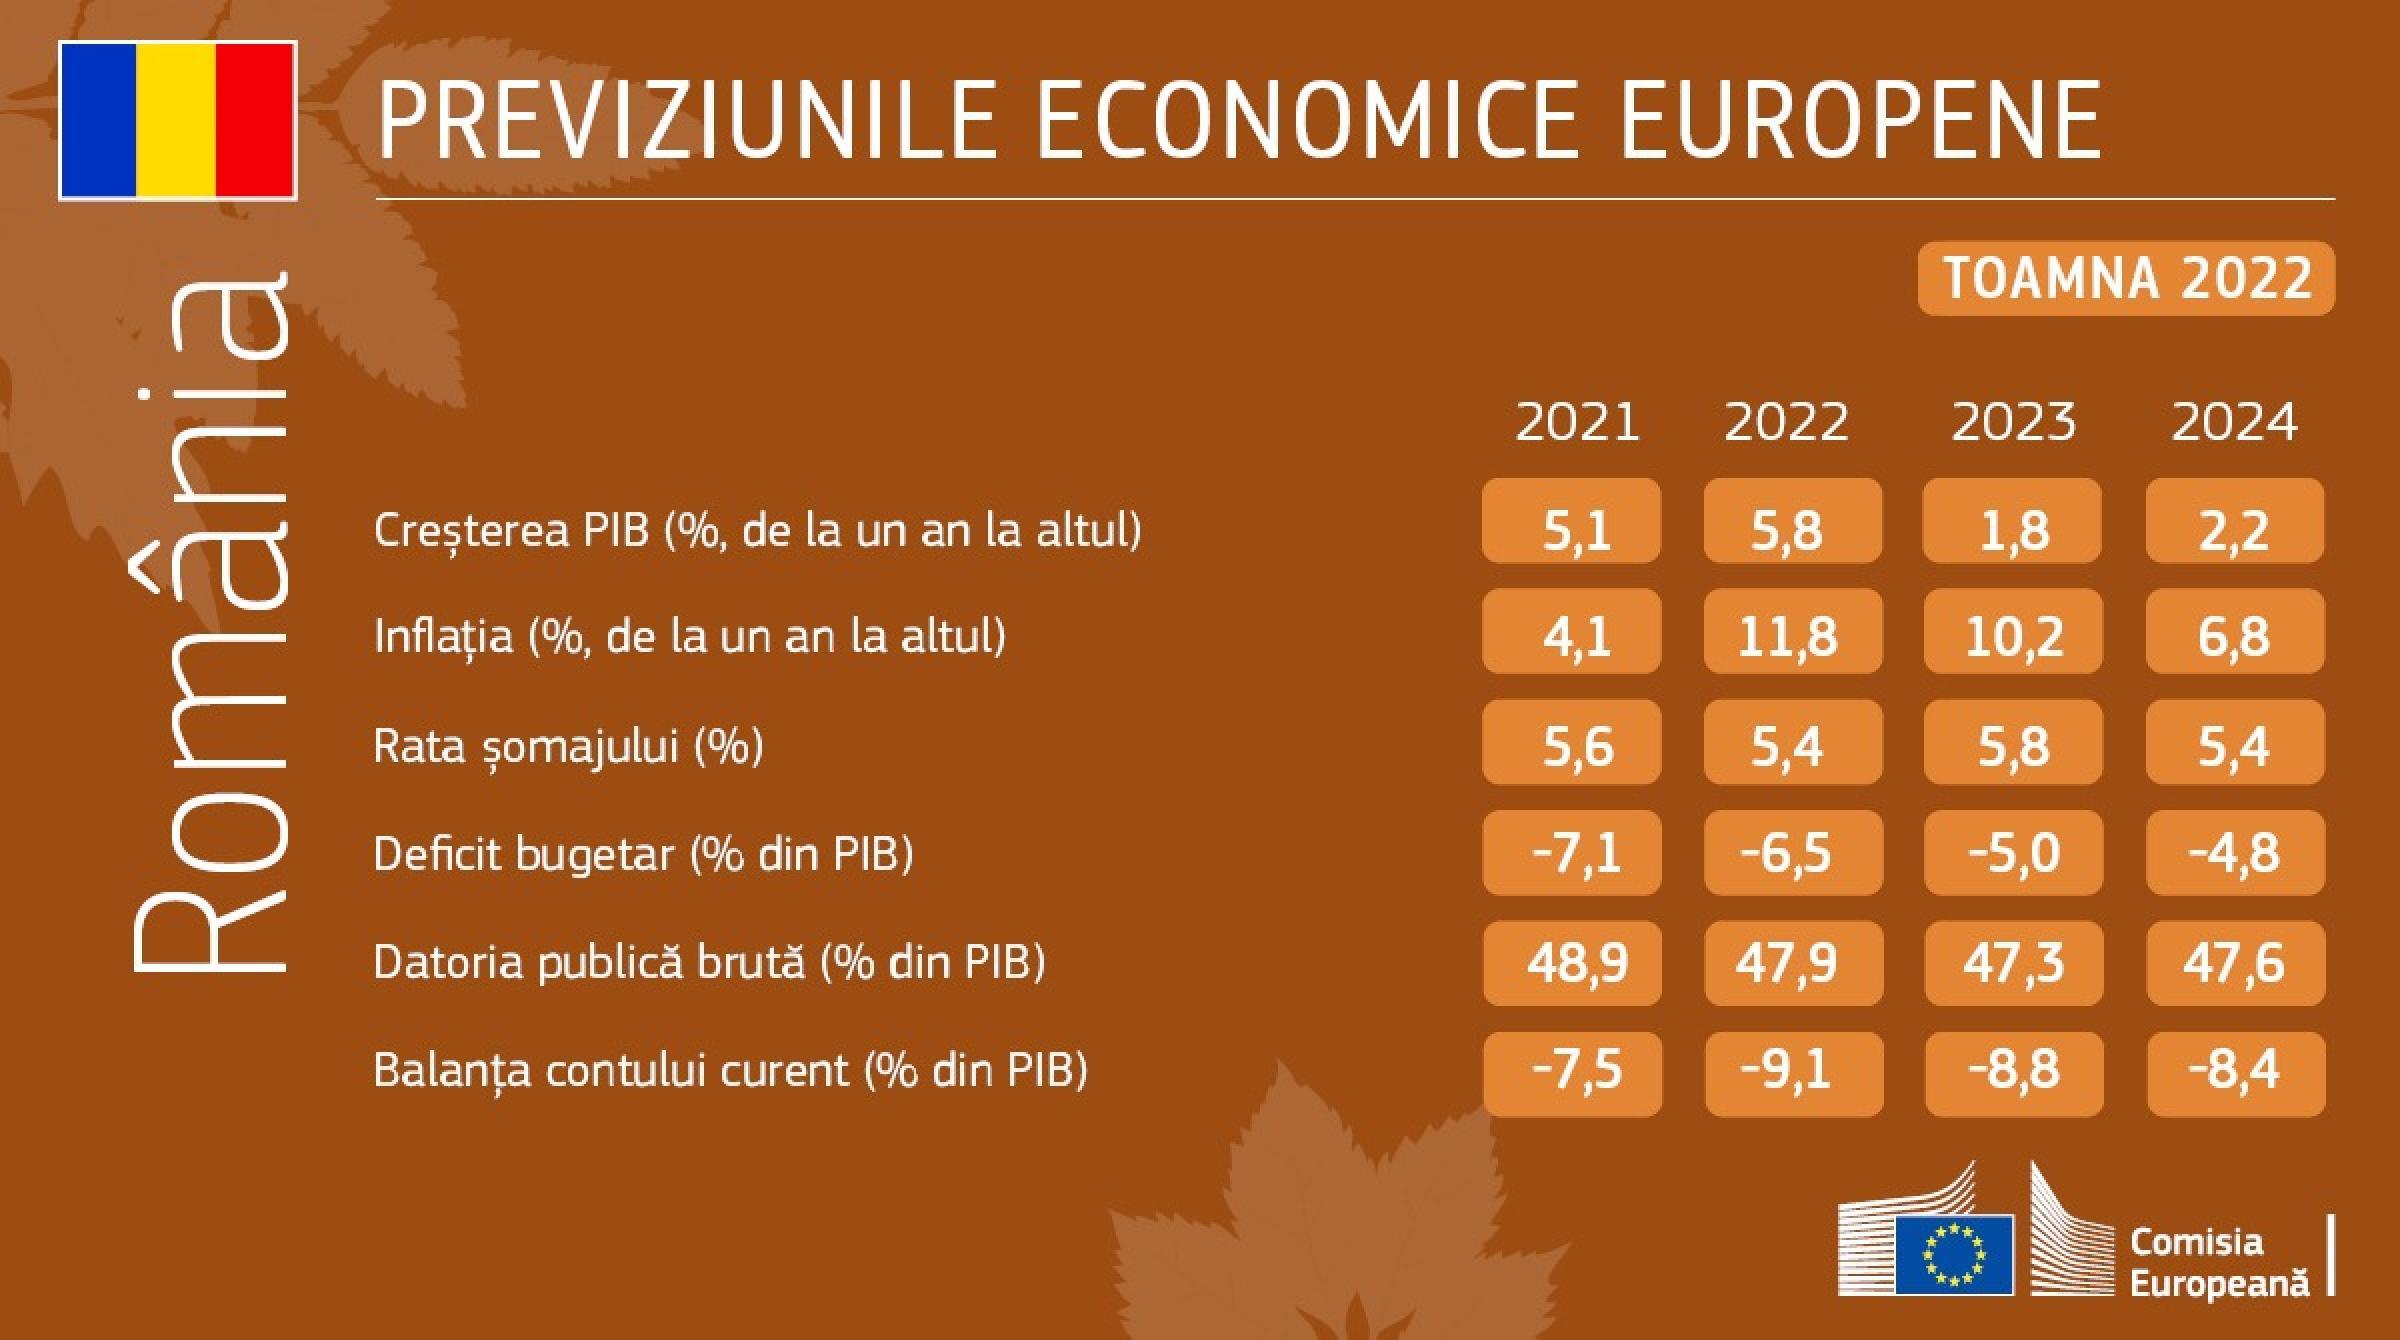 Previziunile economice de toamnă ale Comisiei Europene pentru România: 1,8% creştere economică în 2023 şi 2,2% în 2024